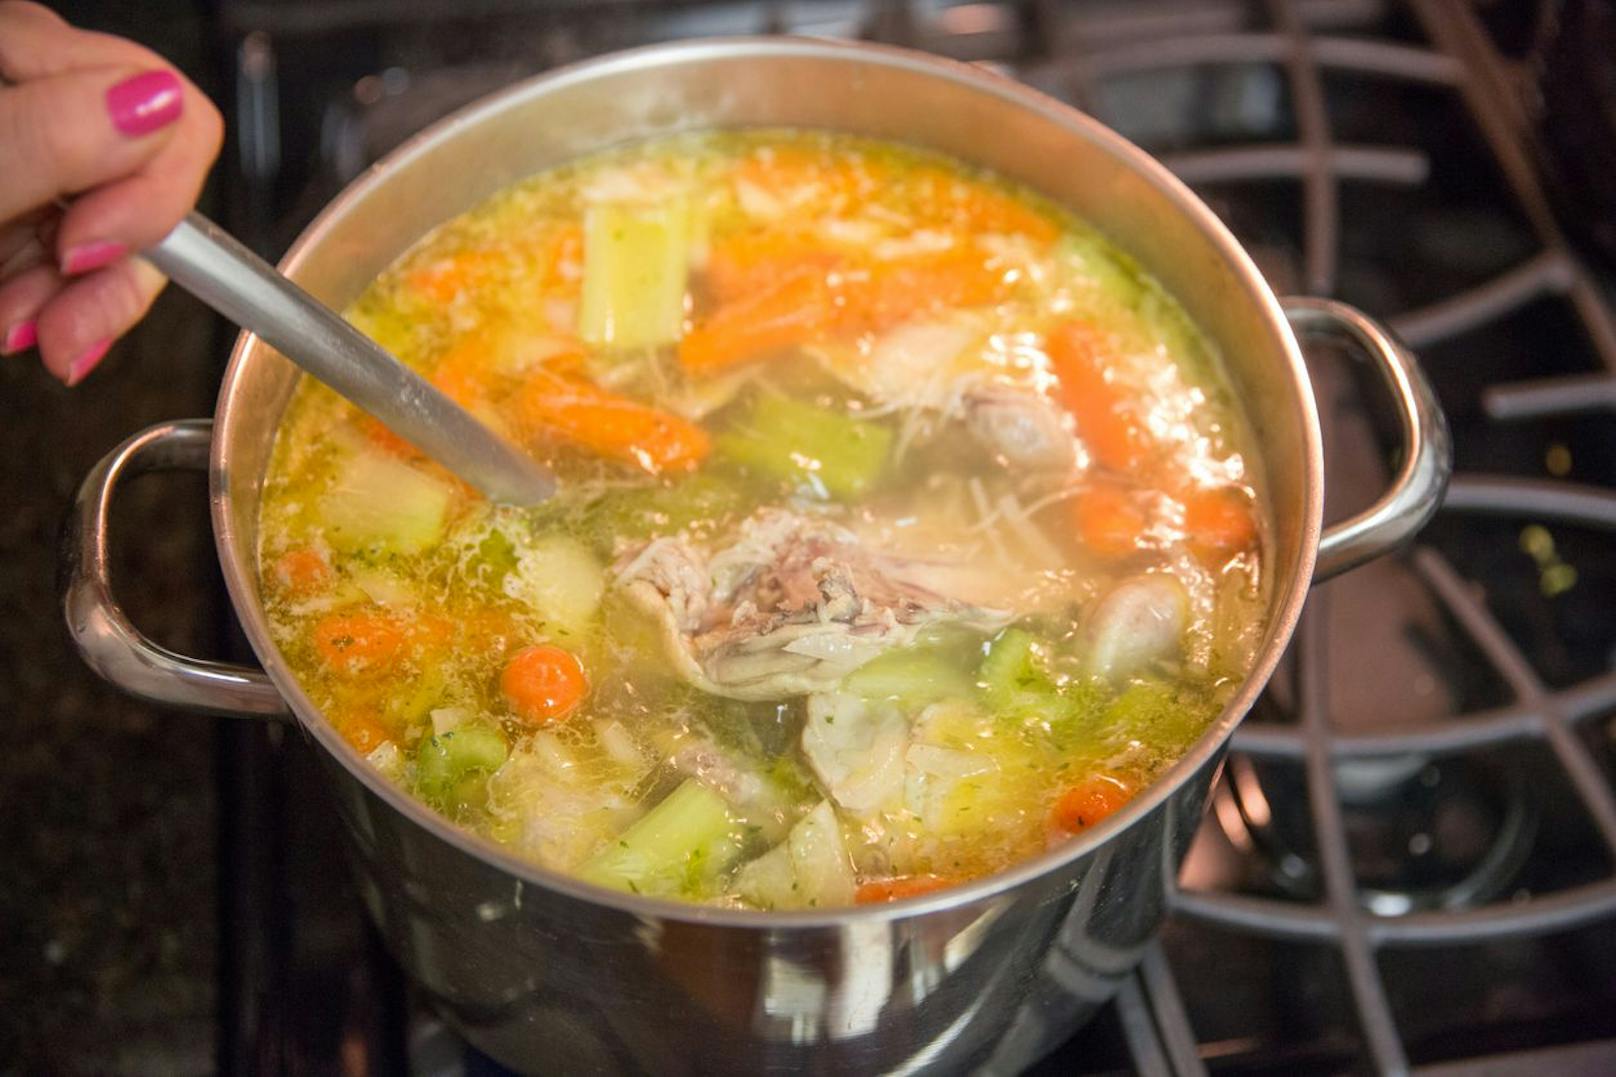 Hühnersuppe ist immer die Antwort. Vor allem, weil die gesunde Suppe deinem Körper Vitamine und Vitalstoffe schenkt. Für eine garantierte Genesung solltest du Geflügel, Suppengemüse und Brühe vermengen und dir die Suppe abends schmecken lassen.